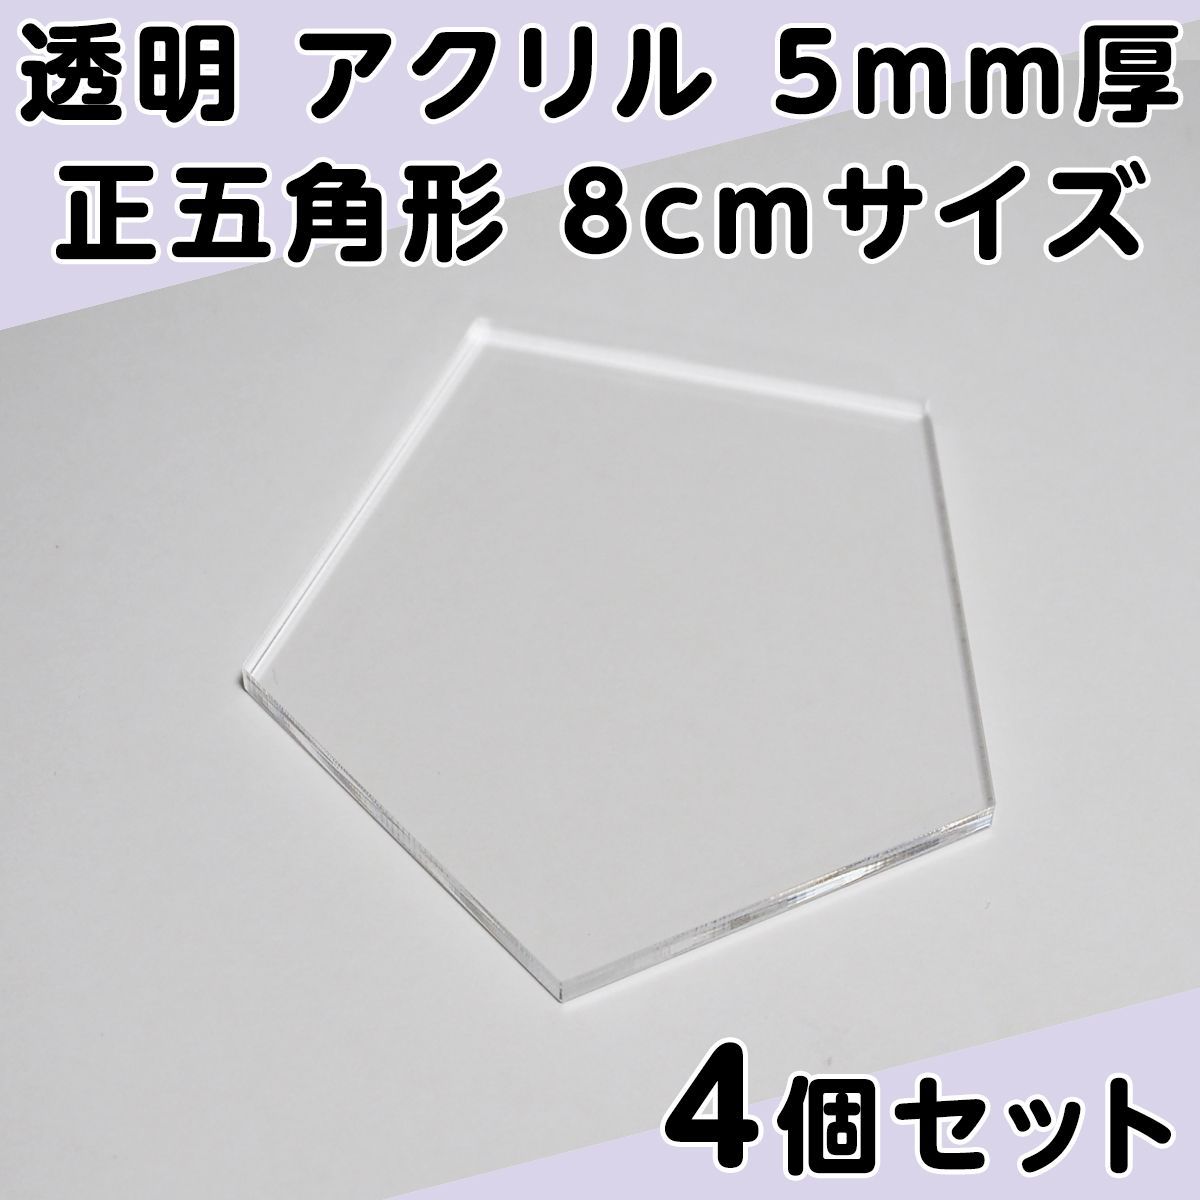 透明 アクリル 5mm厚 正八角形 8cmサイズ 4個セット